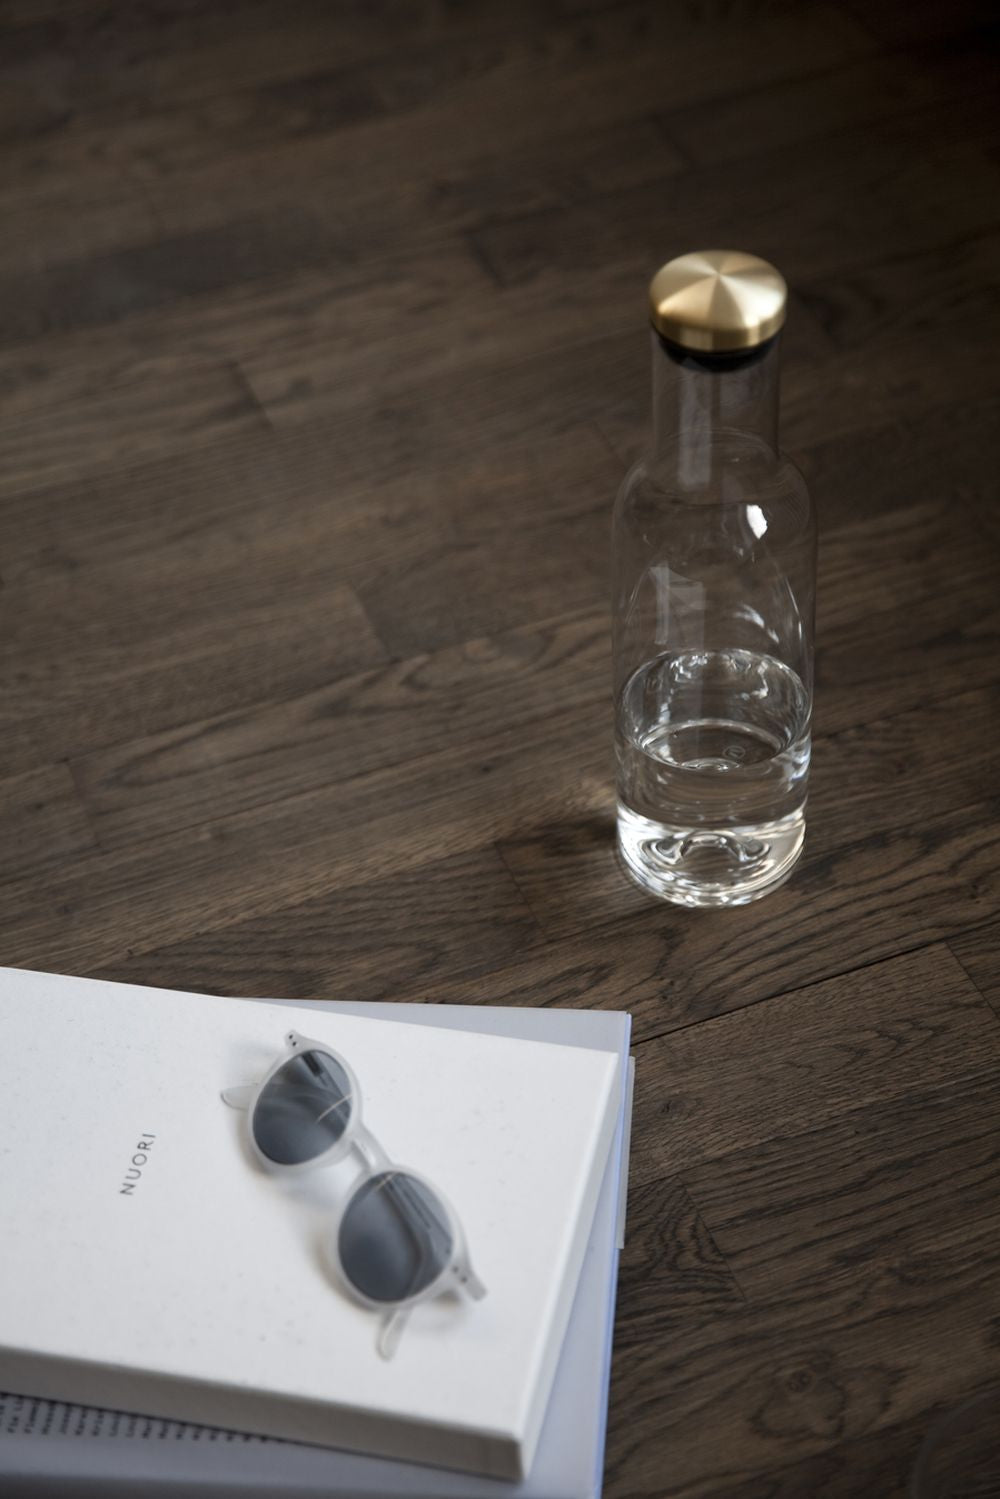 Audo Copenhagen Vin & vatten som dricker flaska mässing, rök